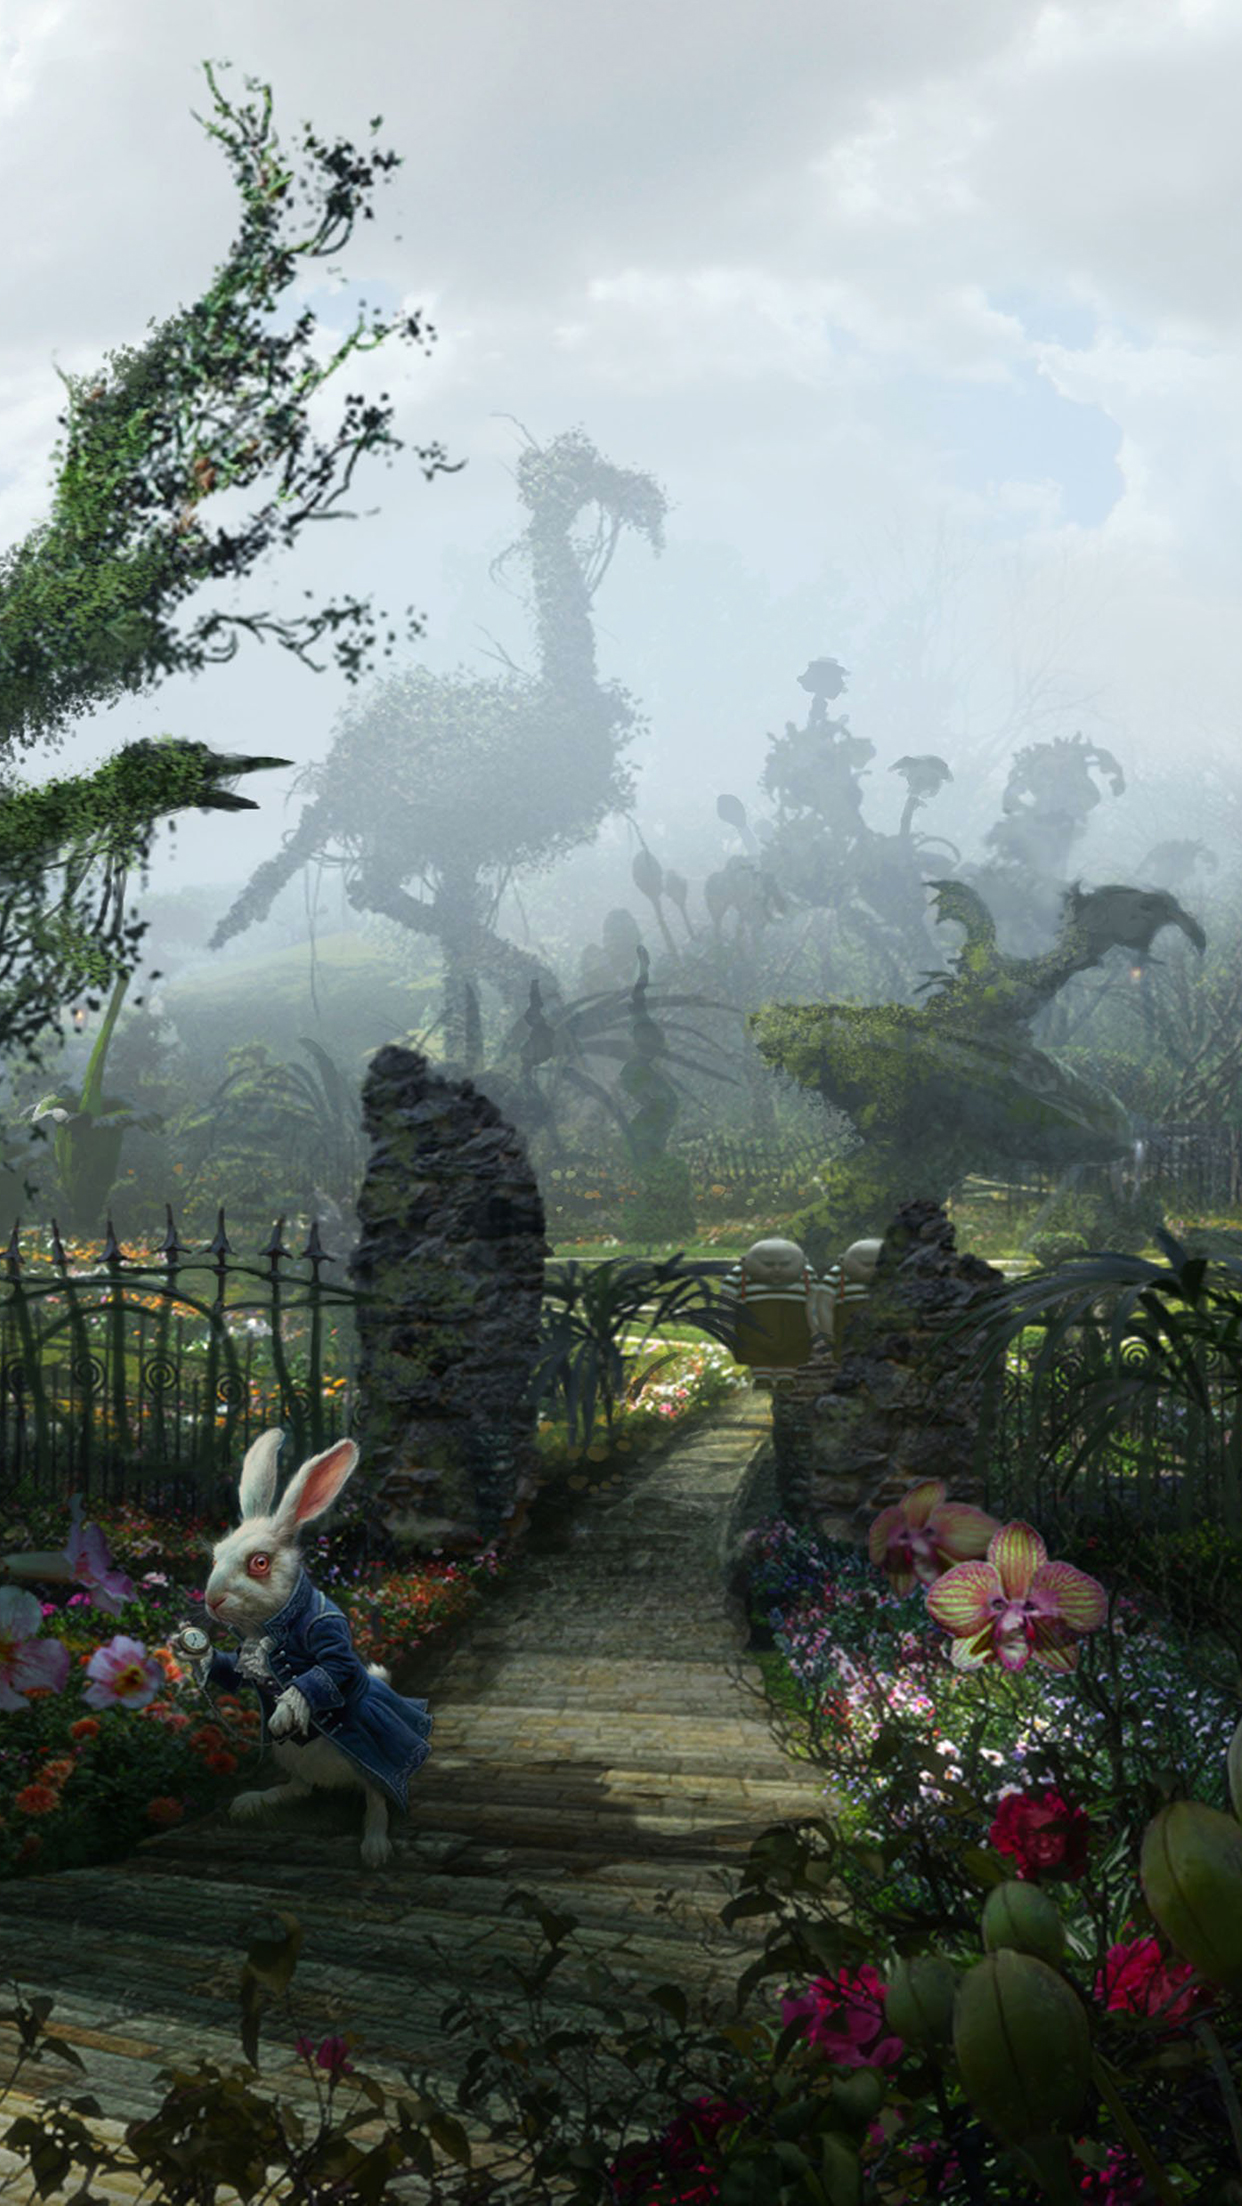 Alice In Wonderland iPhone Wallpaper